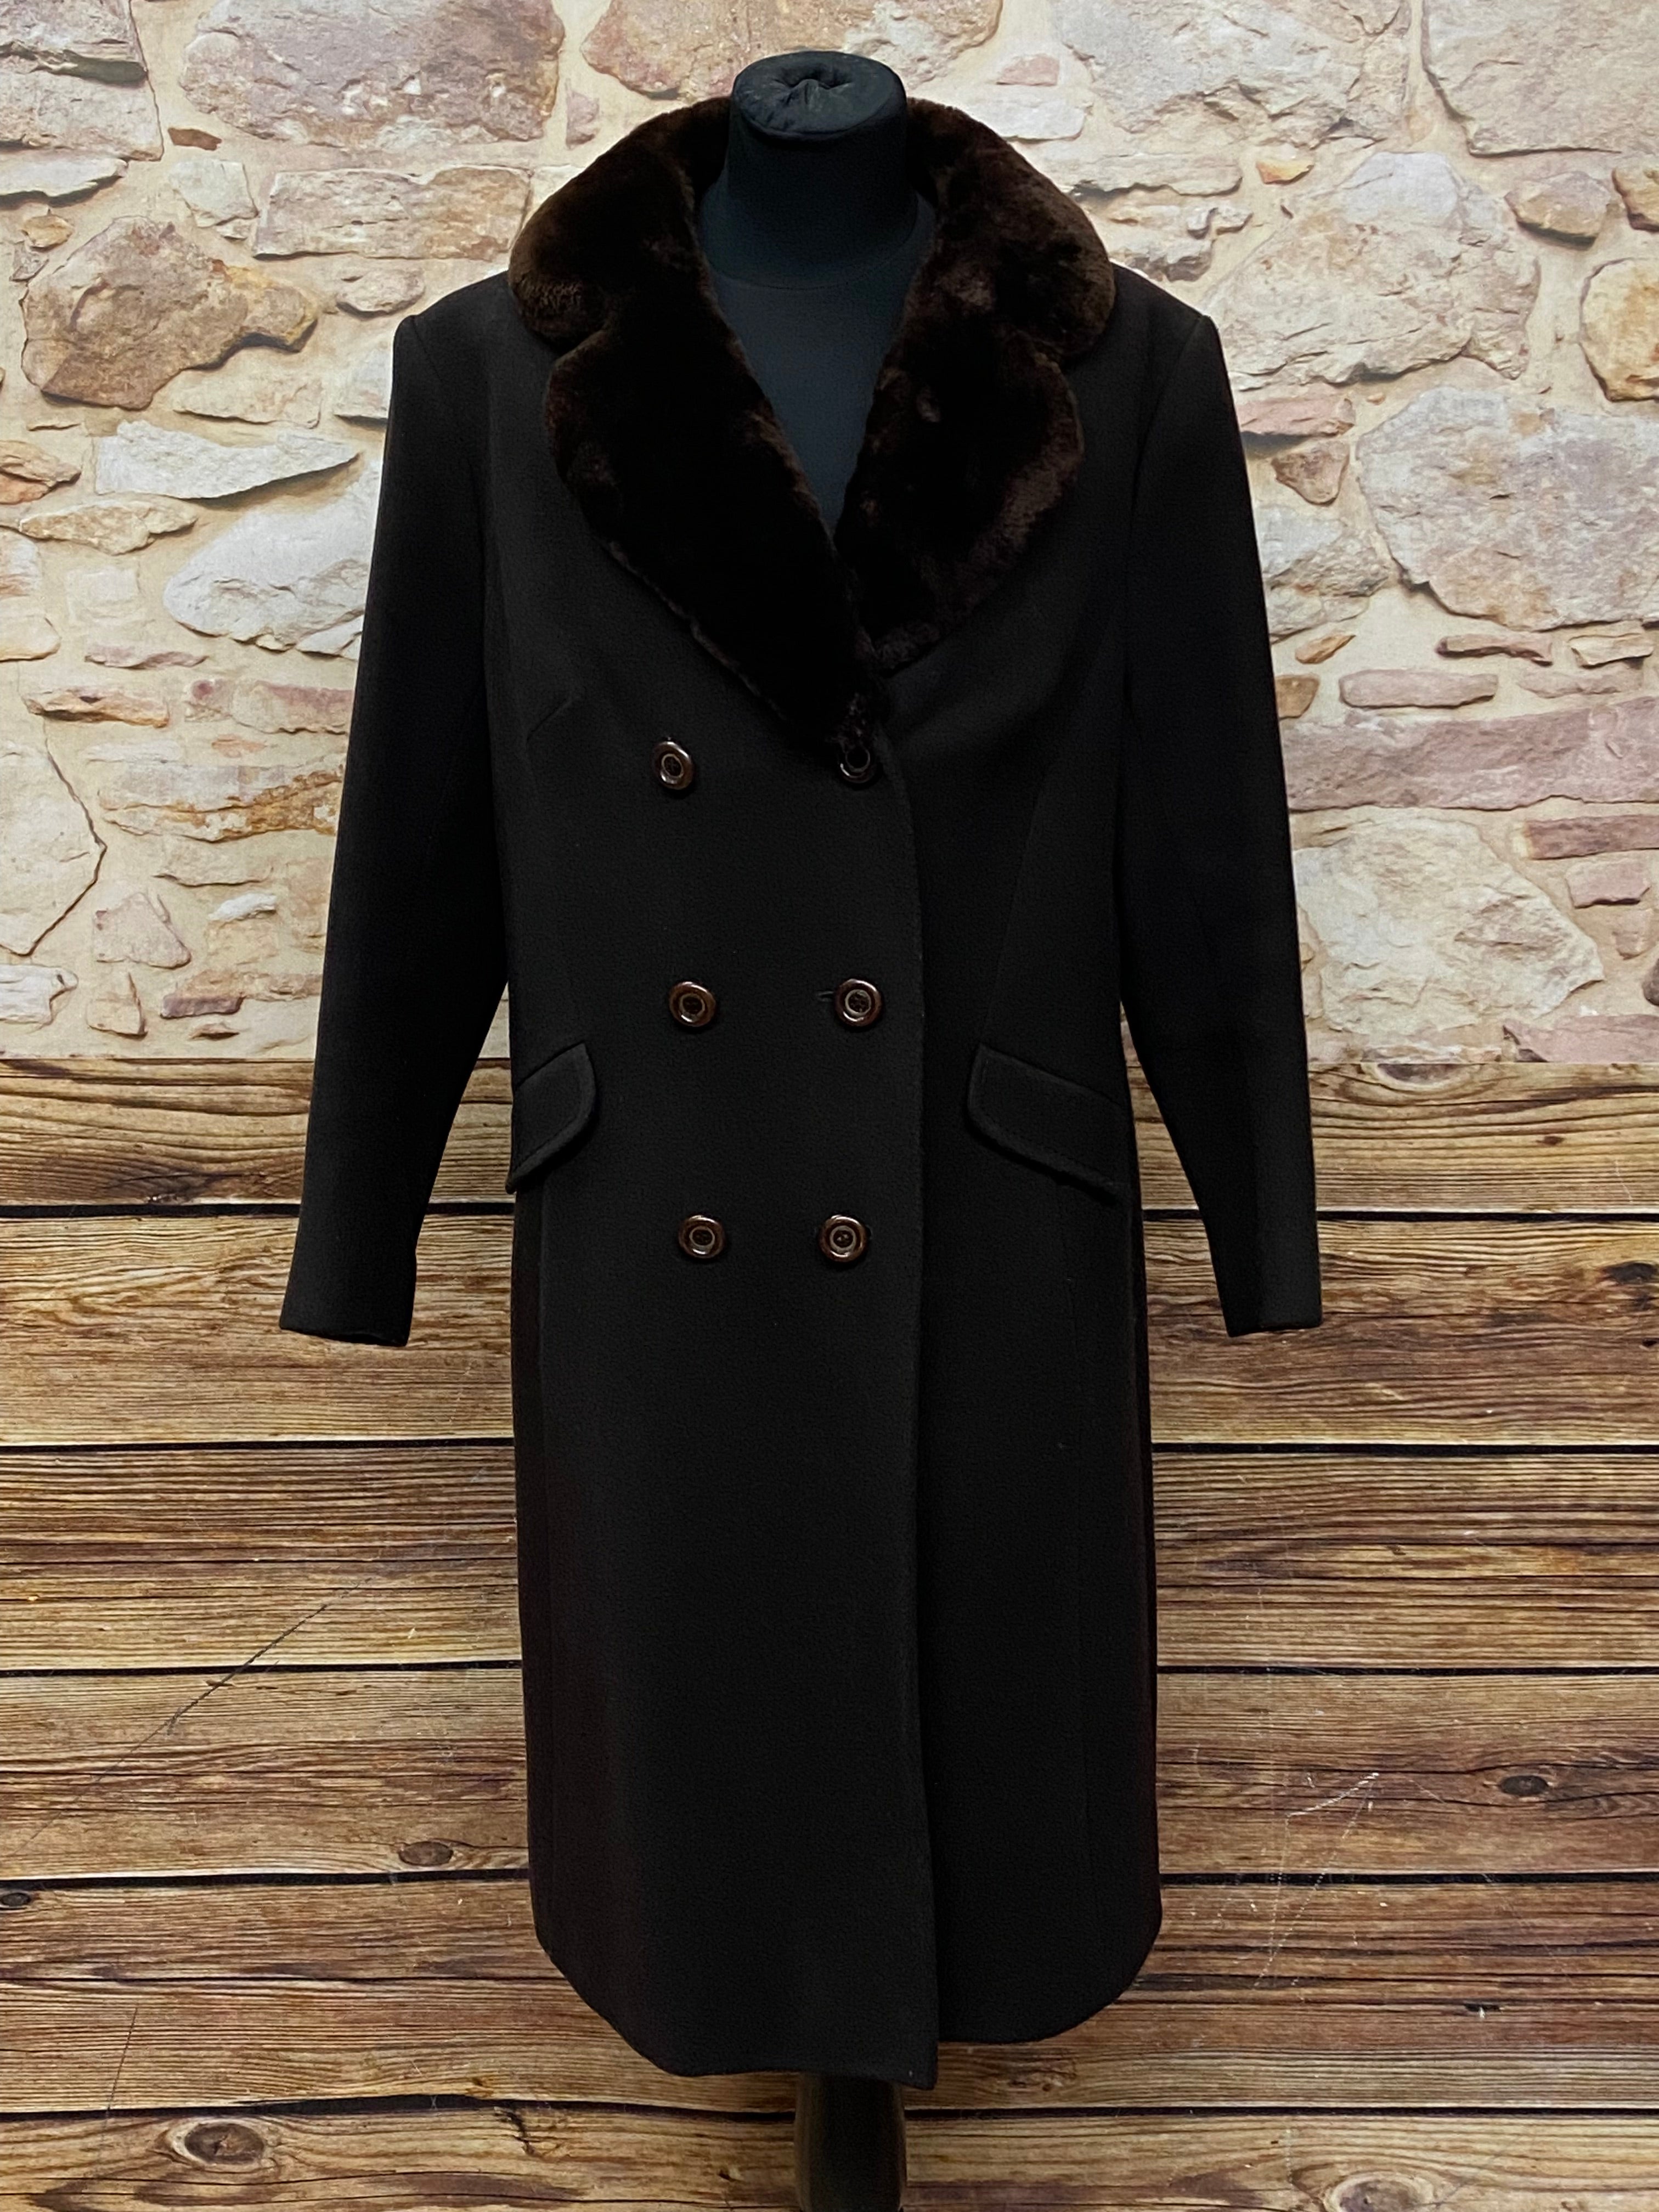 Langer Vintage Damenmantel 20er Jahre Stil in schwarz mit Fellkragen Gr.38